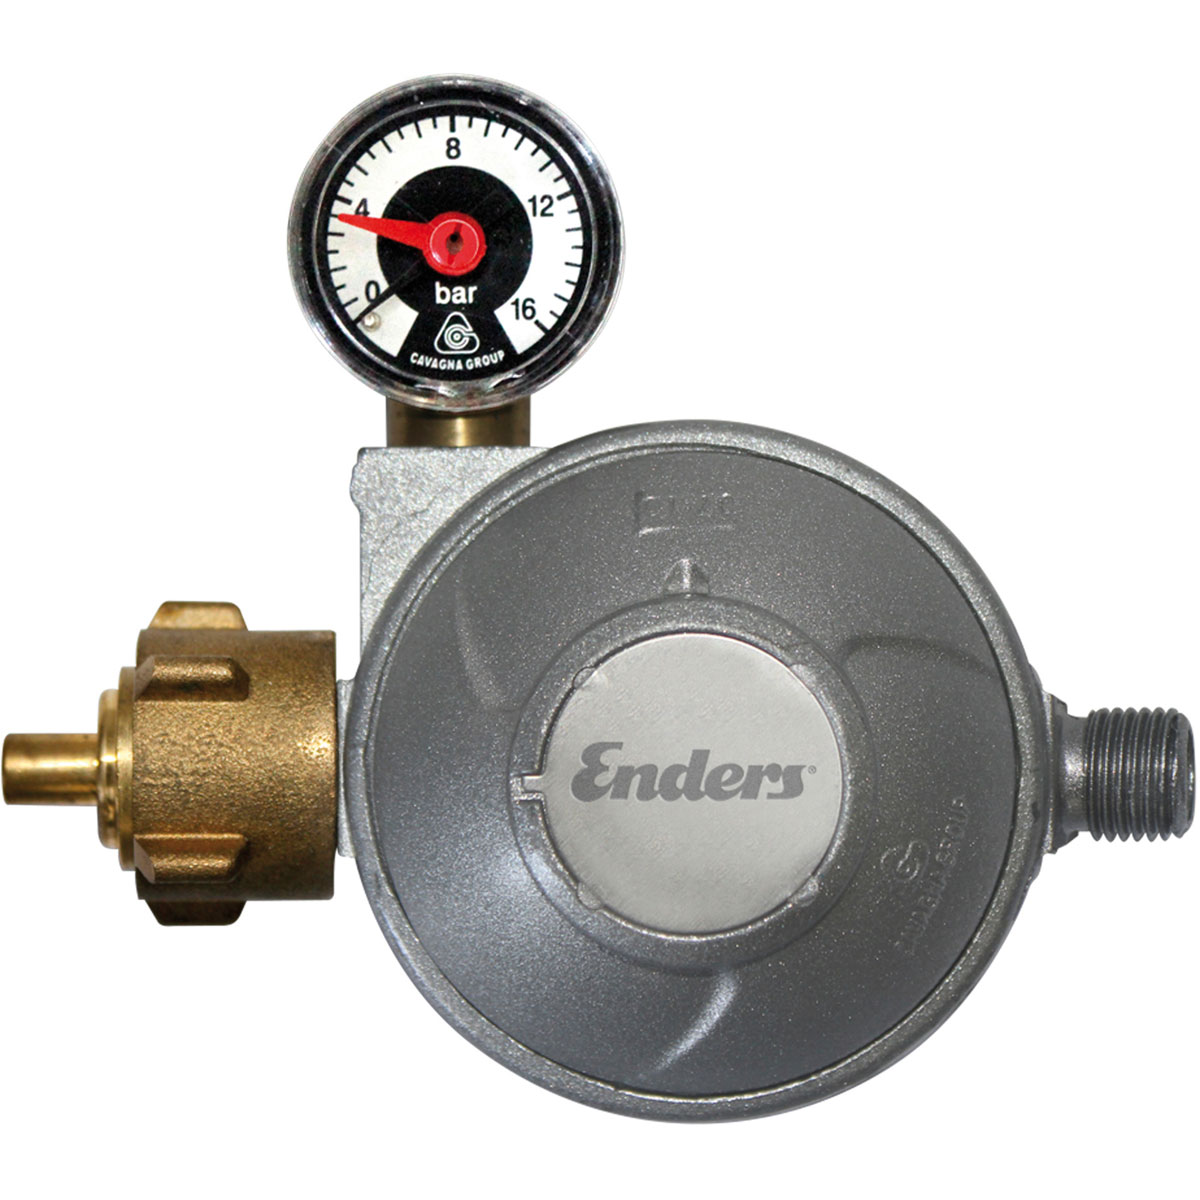 Enders Colsman Gasdruckregler mit Manometer